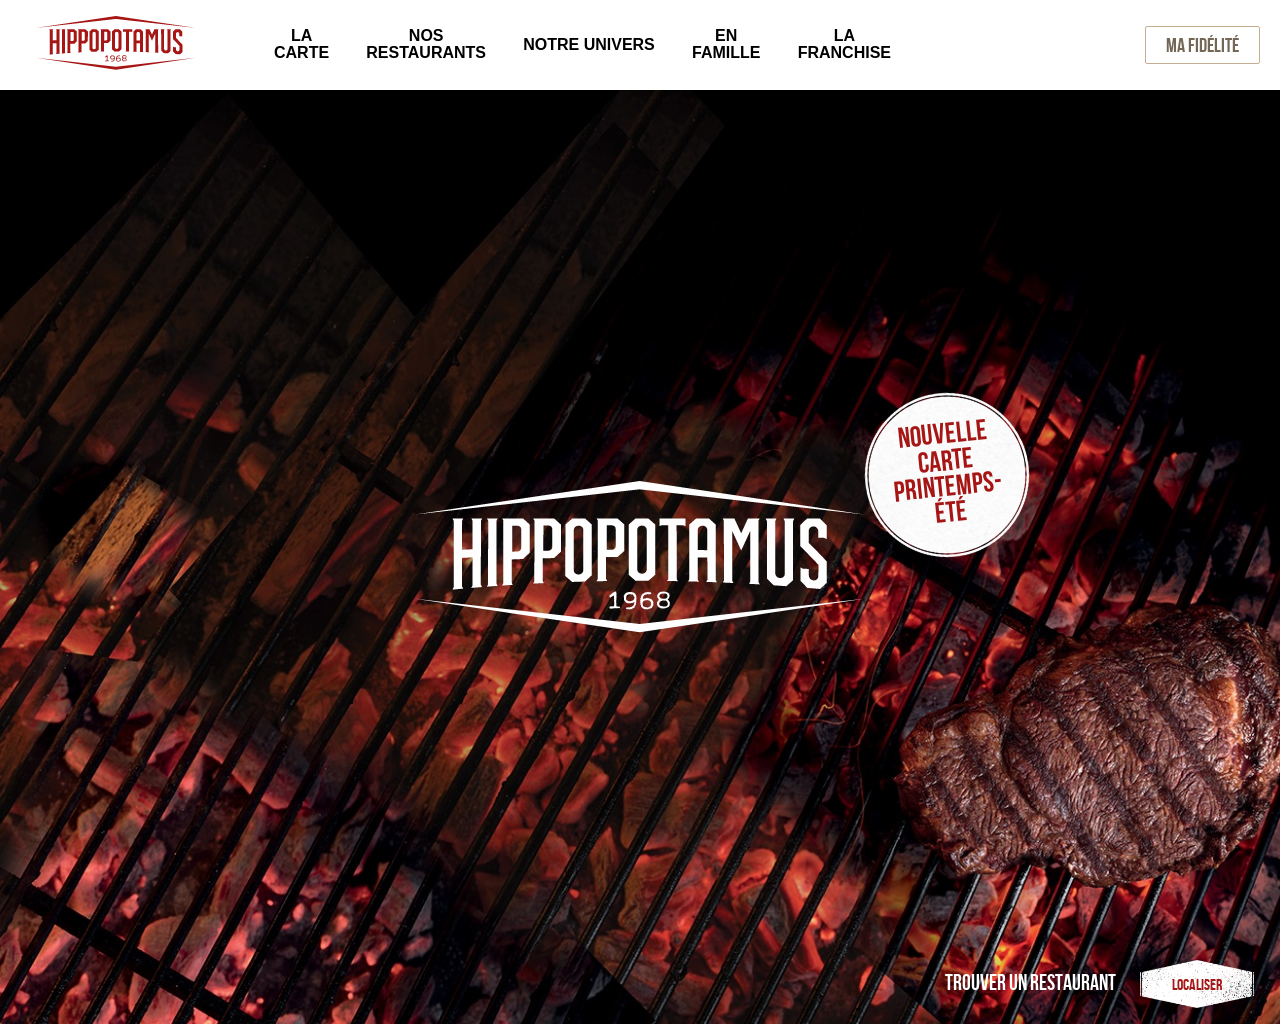 www.hippopotamus.fr